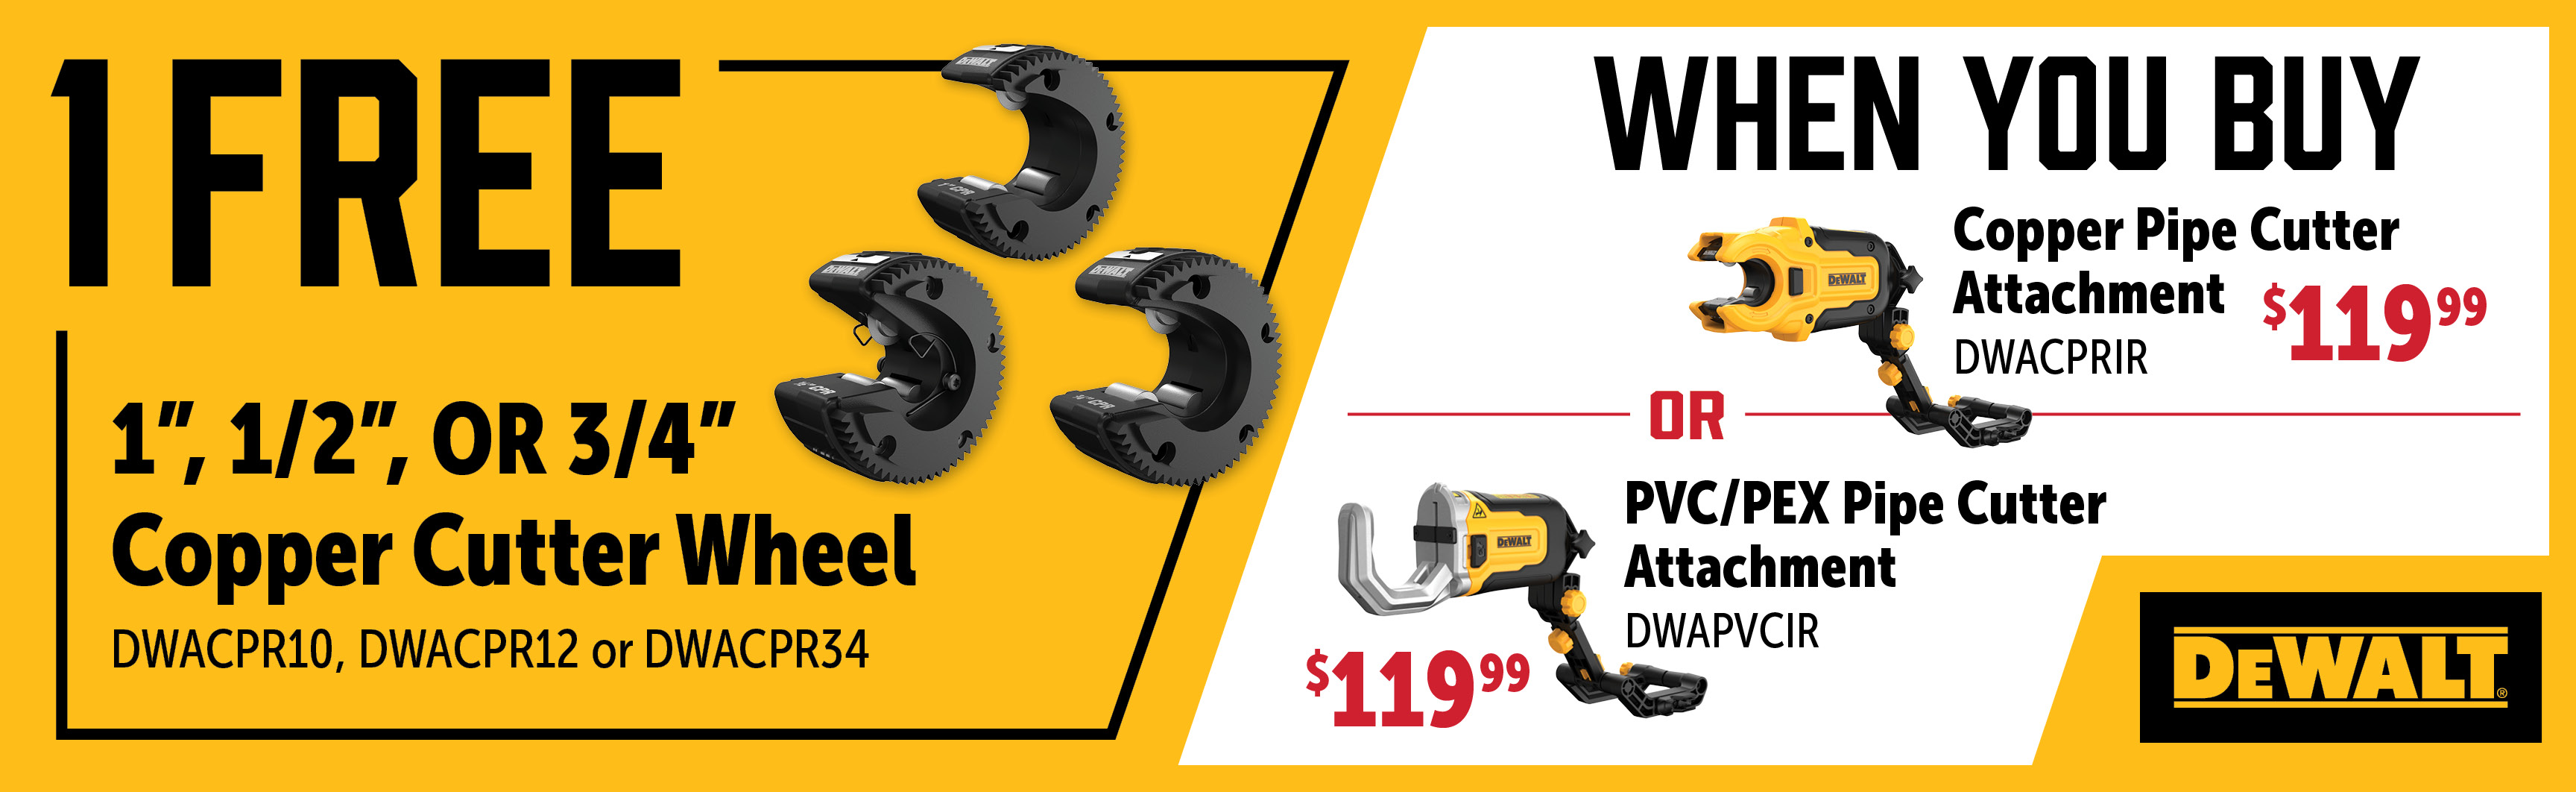 Dewalt Jul-Sep: Buy a DWACPRIR or a DWAPVCIR and Get a Free Qualifying Cutting Wheel